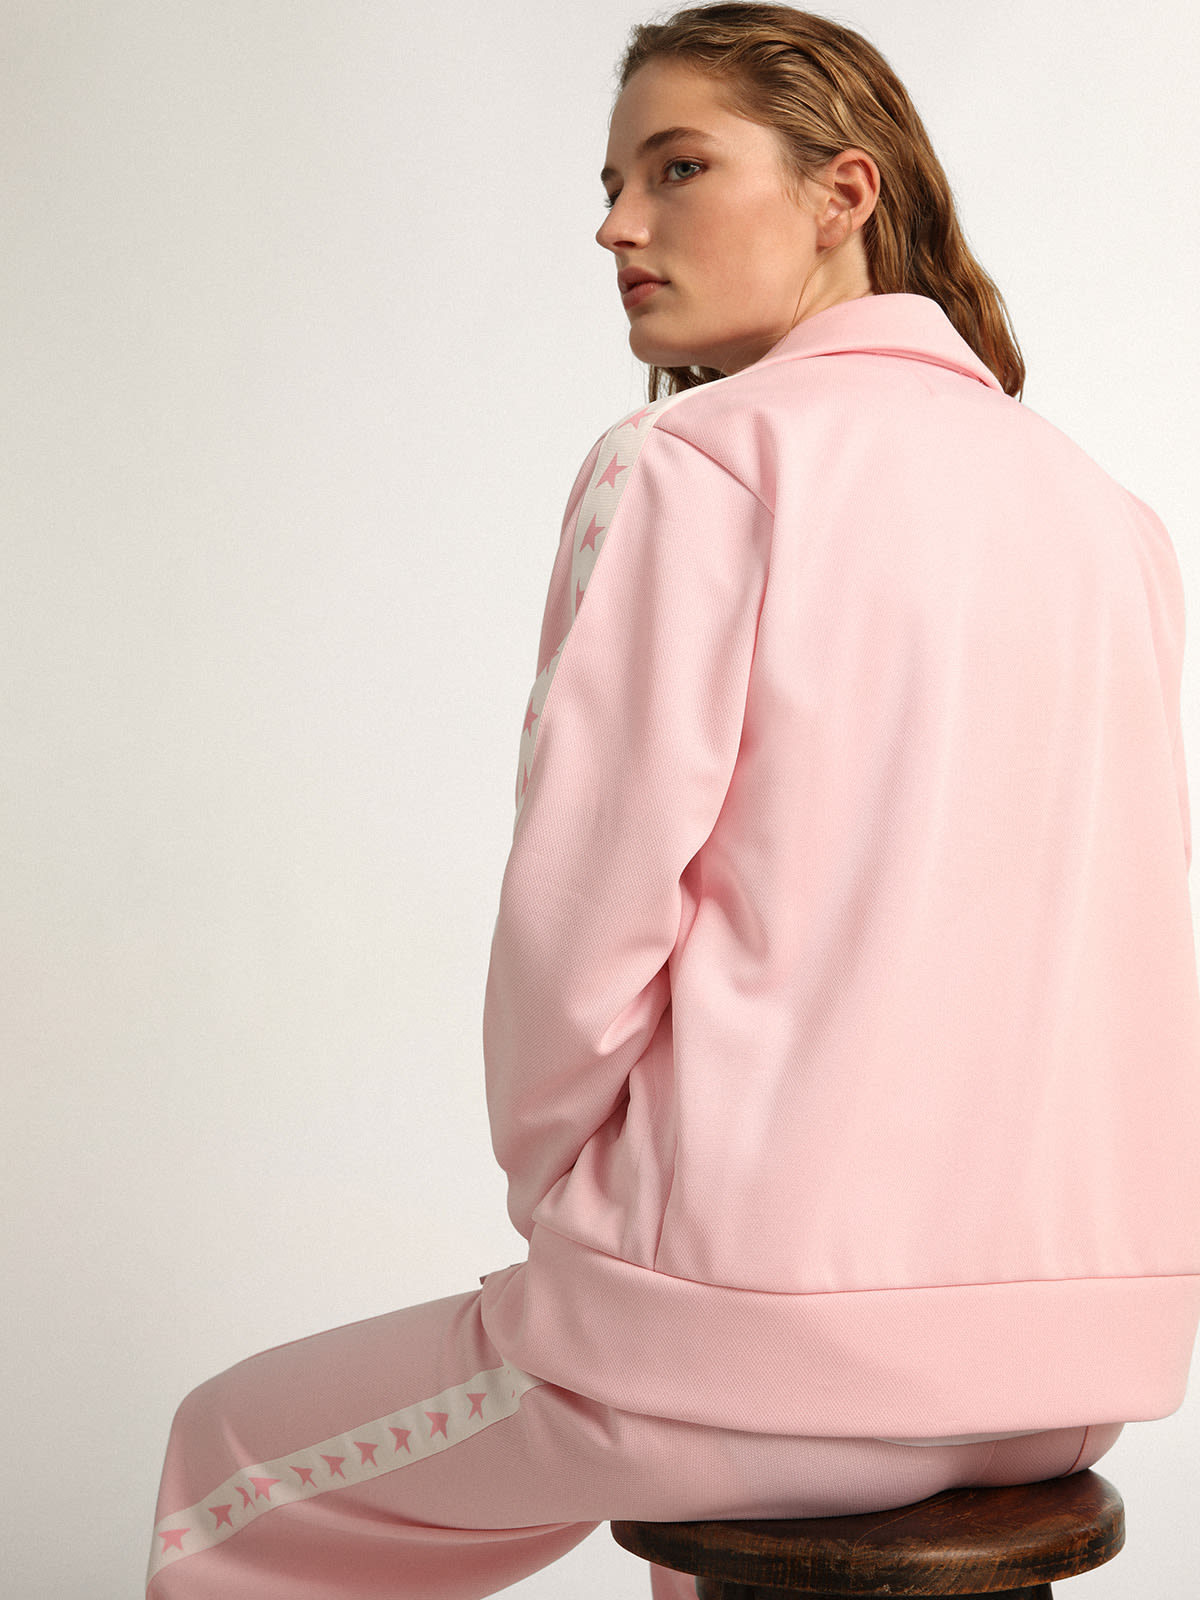 Golden Goose - Women's pink zipped sweatshirt in 